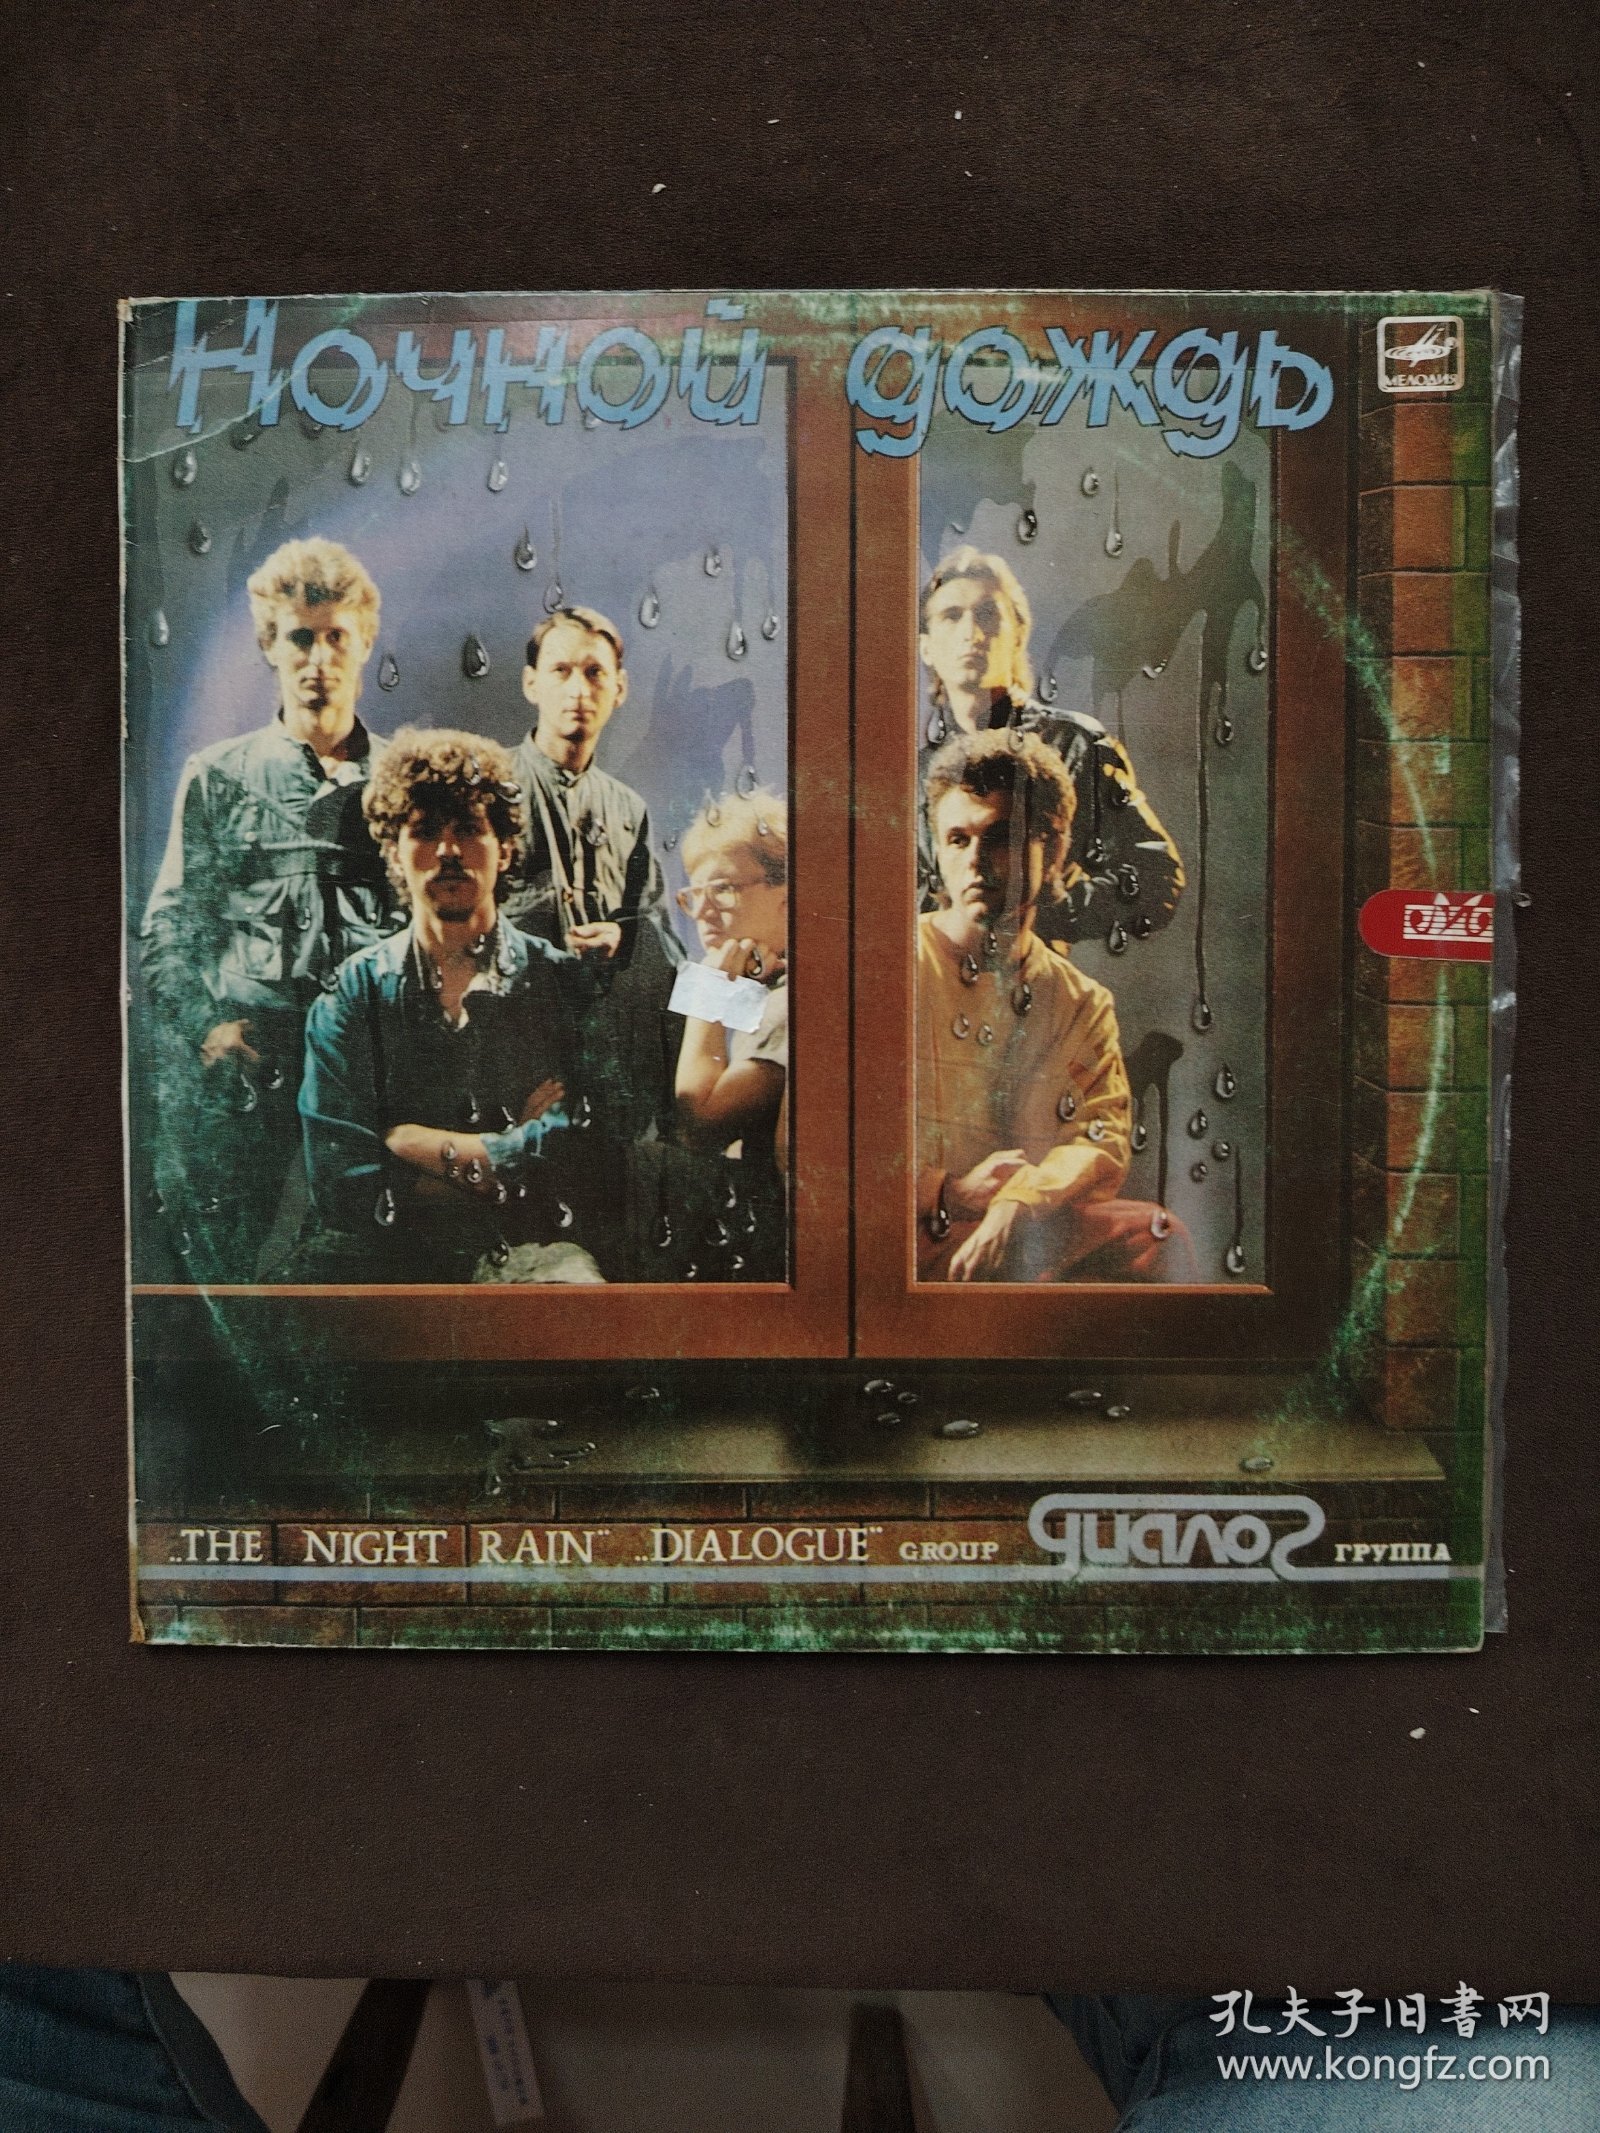 黑胶唱片 THE NIGHT RAIN DIALOGUE GROUP 对话小组演唱流行曲 1986